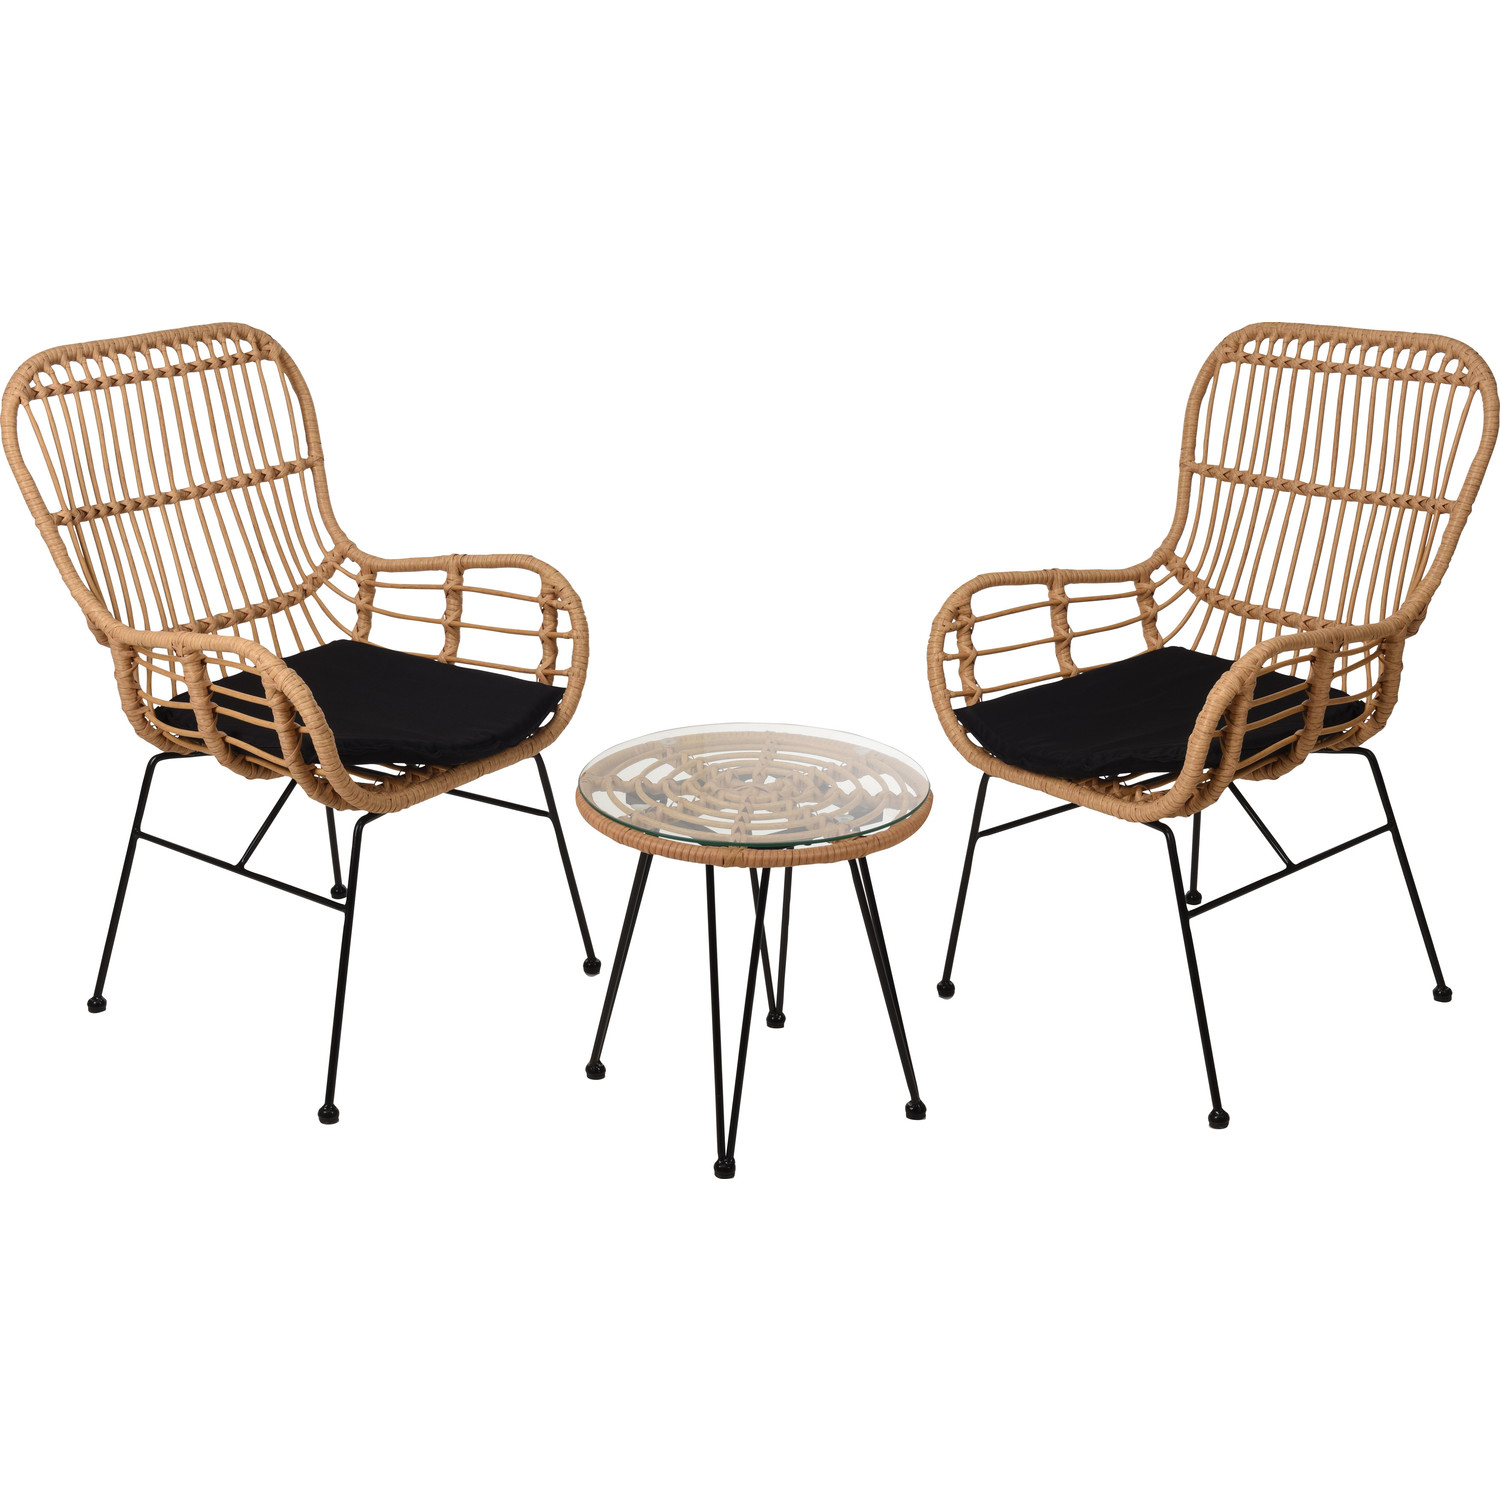 Relaxwonen - tuinset Rotan - 2 stoelen & tafel - Kwaliteit - Trend 2021 -  Relaxwonen